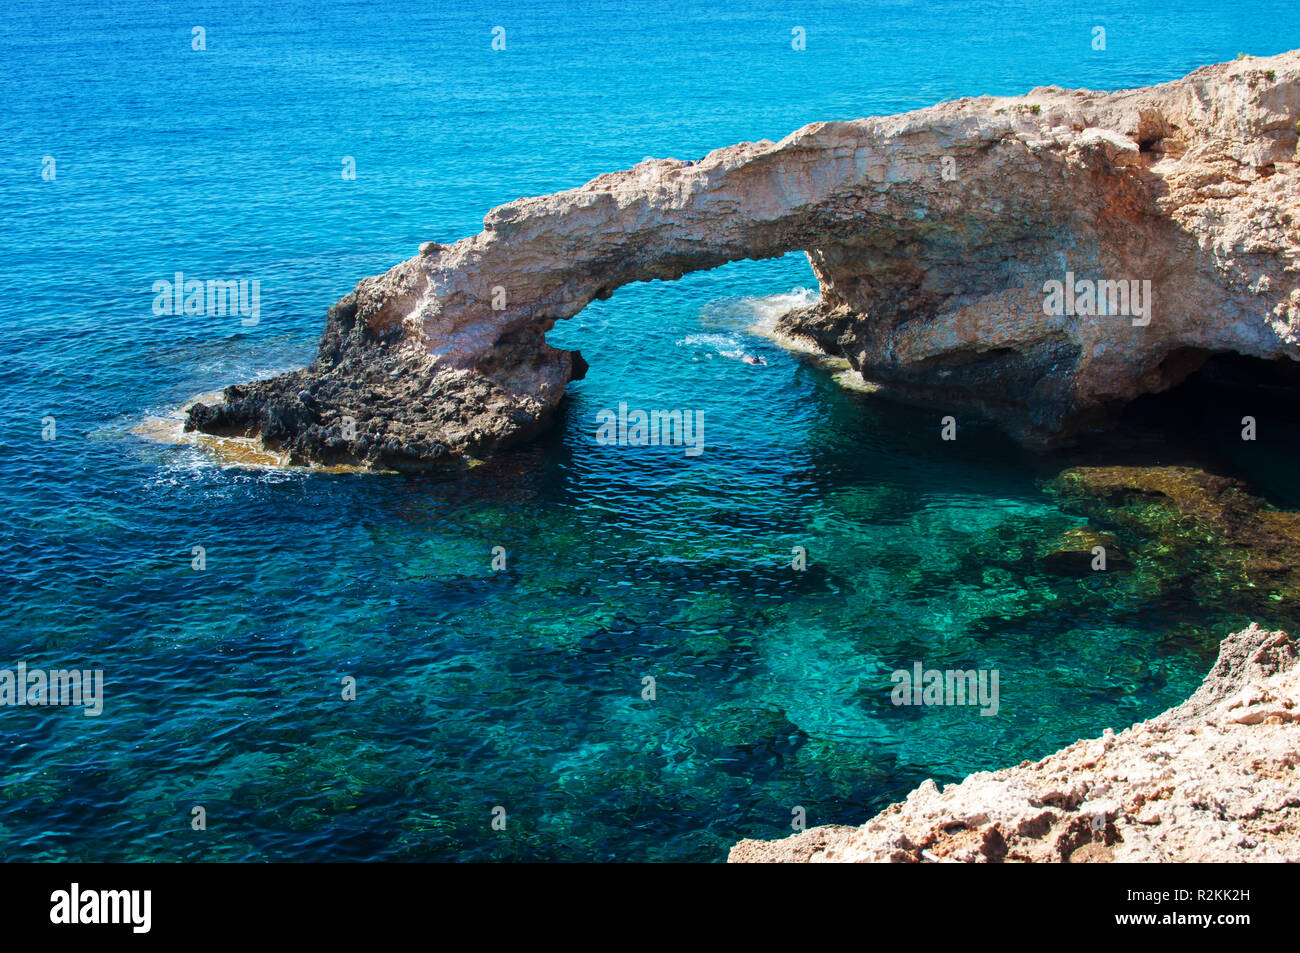 Clouseup de Agia Napa, Chipre, hito natural amor Bridge. Cerca de los acantilados de piedra amarilla transparente cristalina agua verde increíble. Caliente su despejado Foto de stock